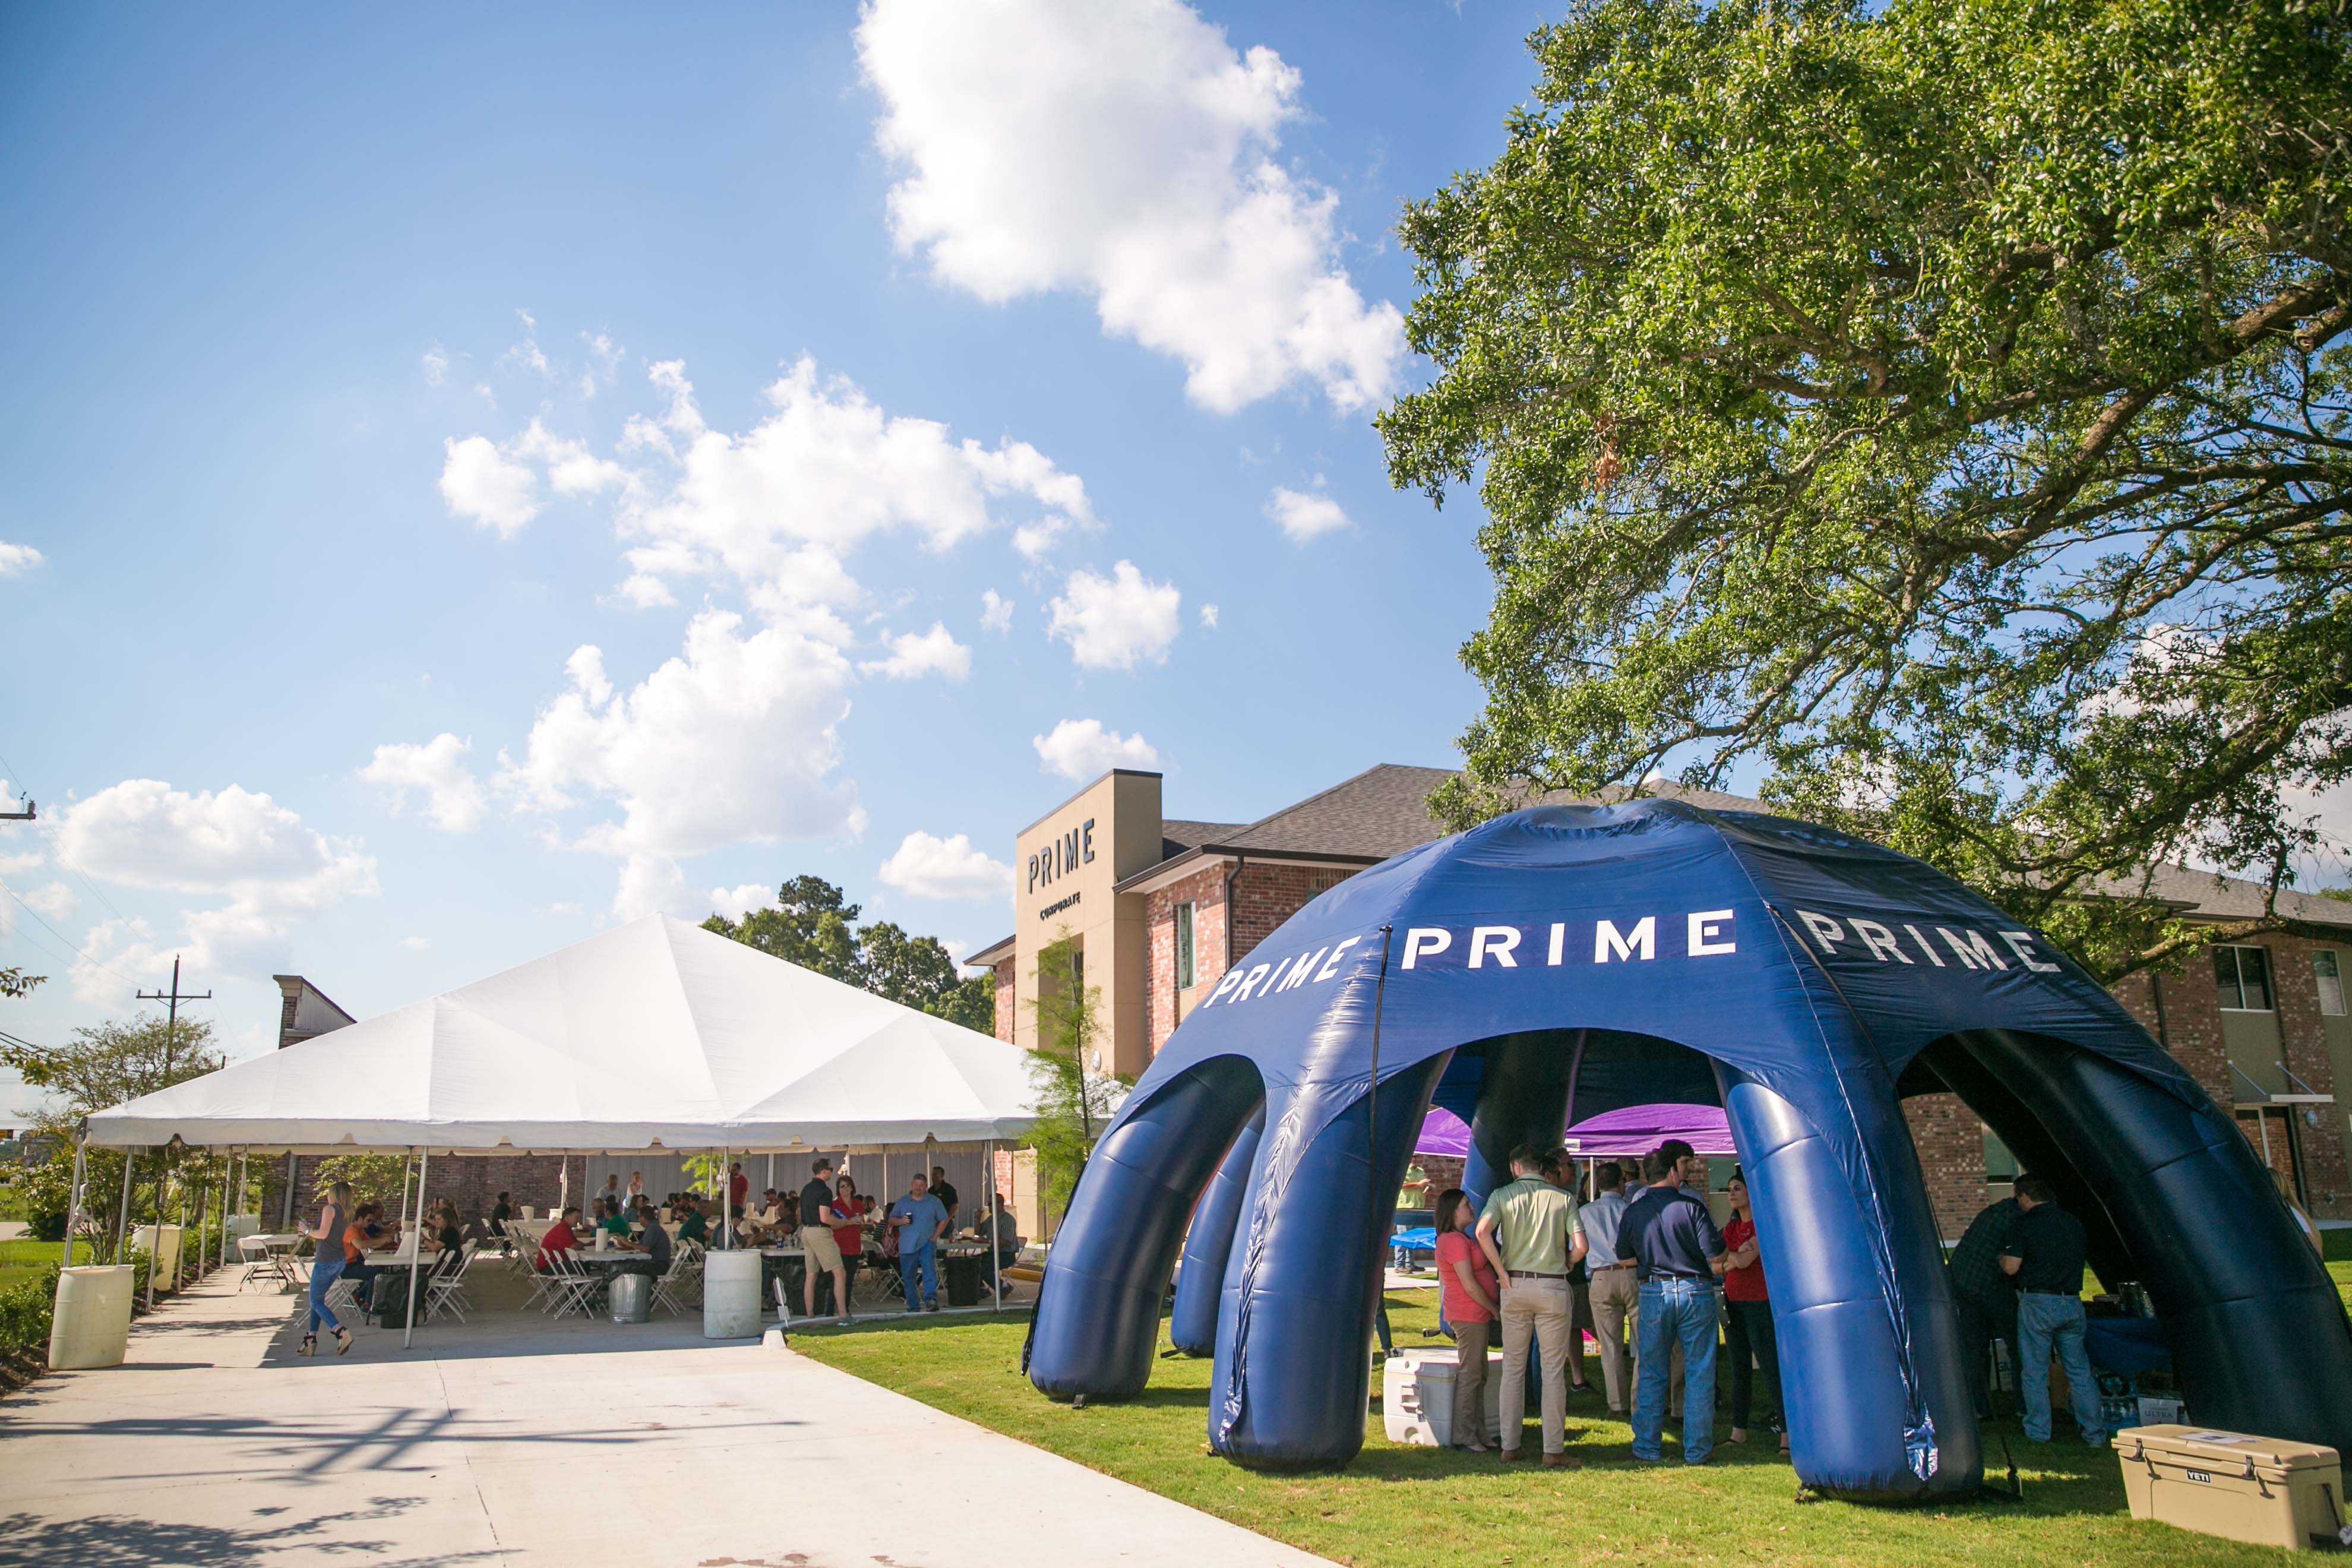 PRIME Celebrates its 25th Anniversary